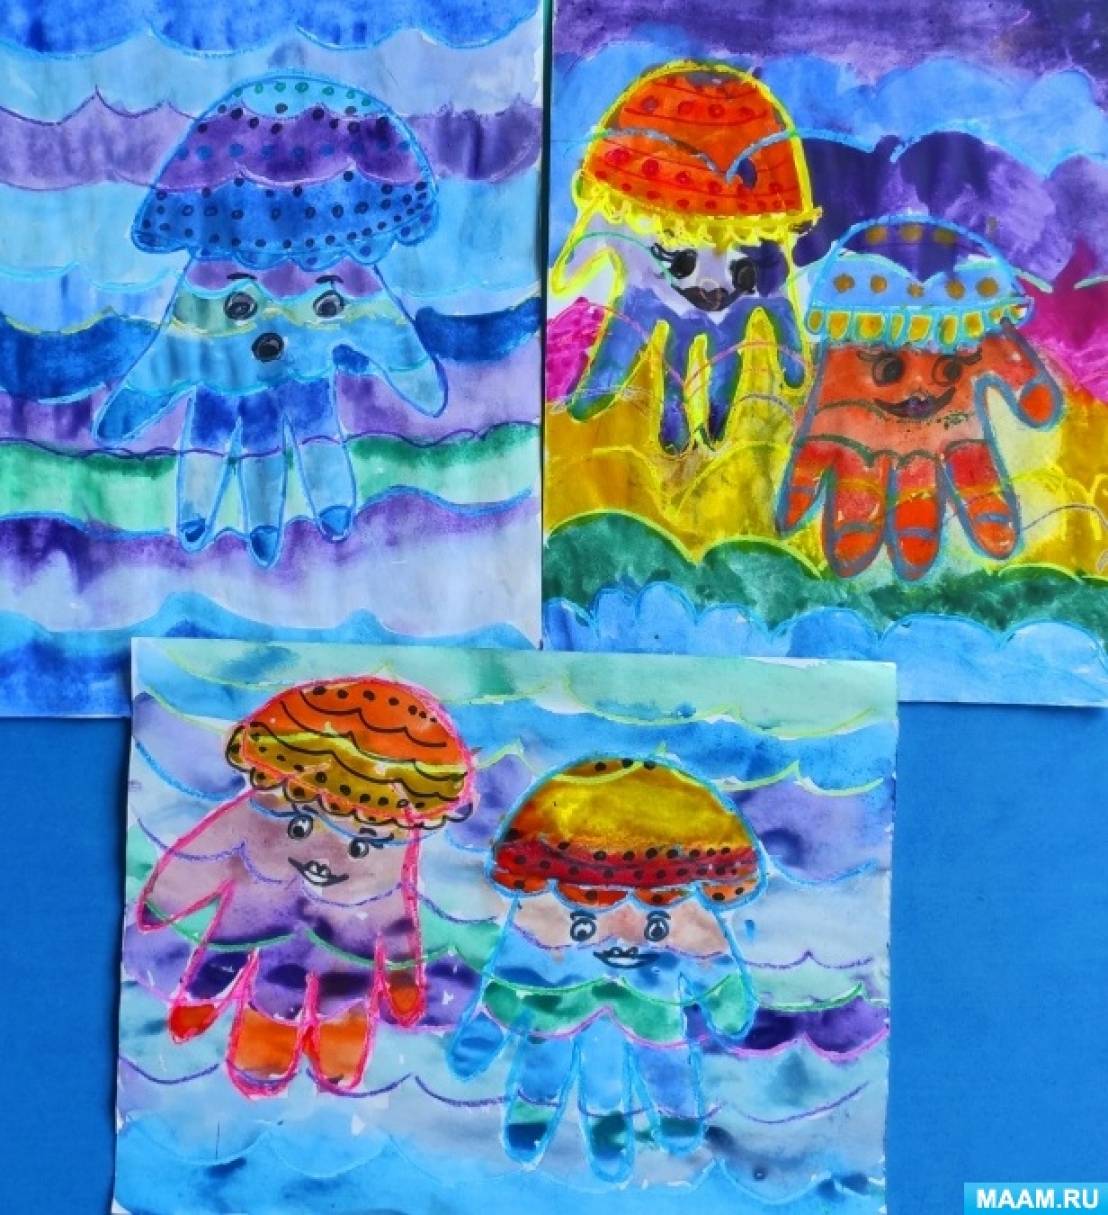 Мастер-класс для детей «Рисование медузы с помощью ладошек»